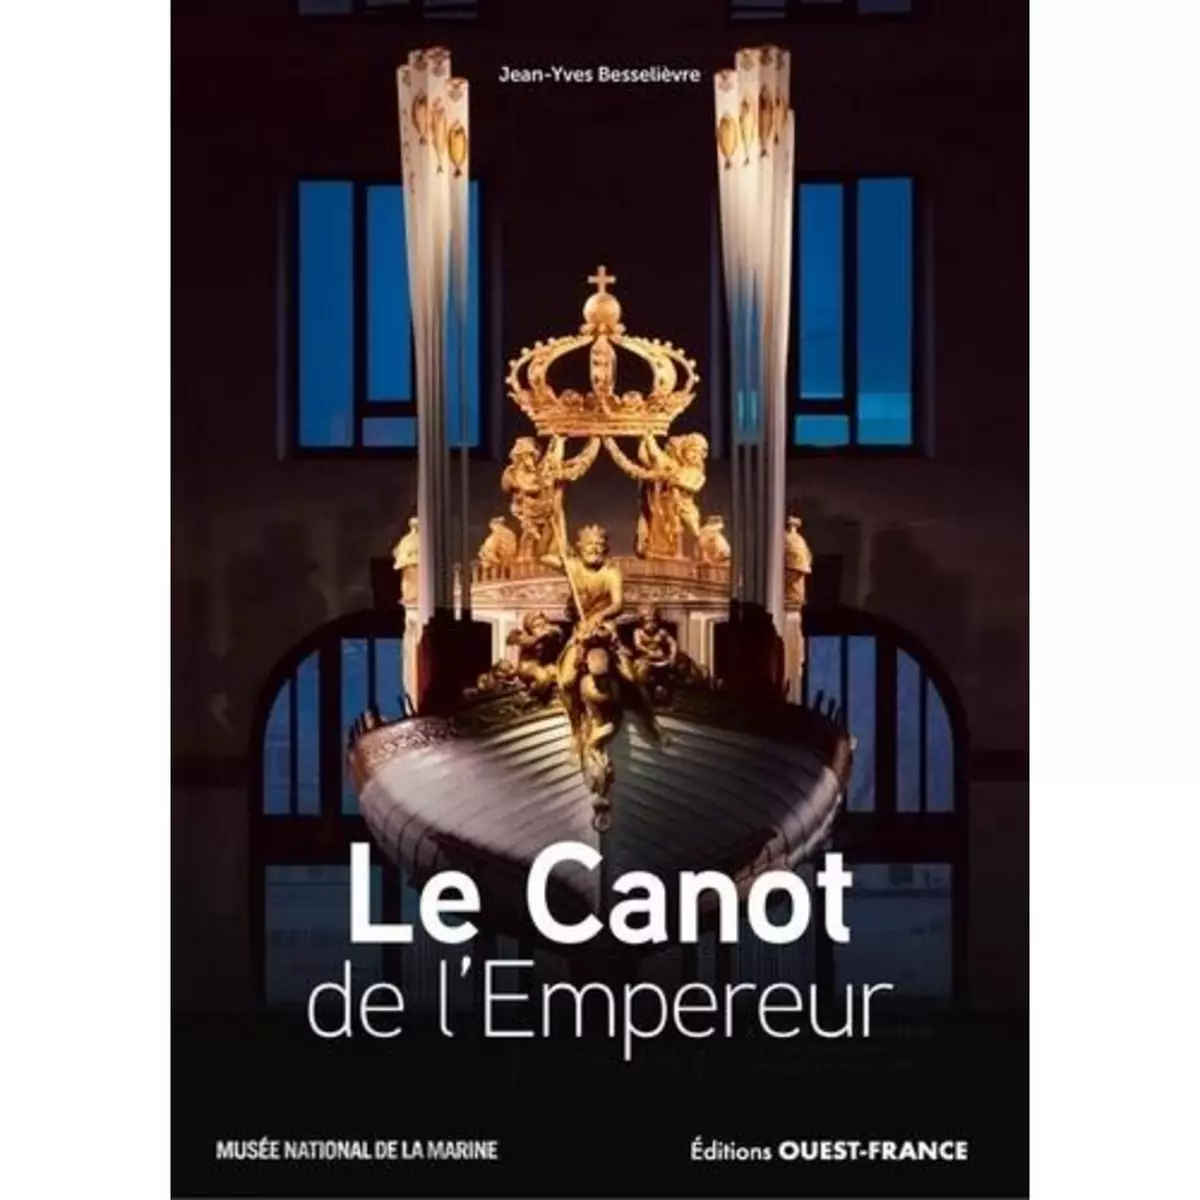  LE CANOT DE L'EMPEREUR, Besselièvre Jean-Yves